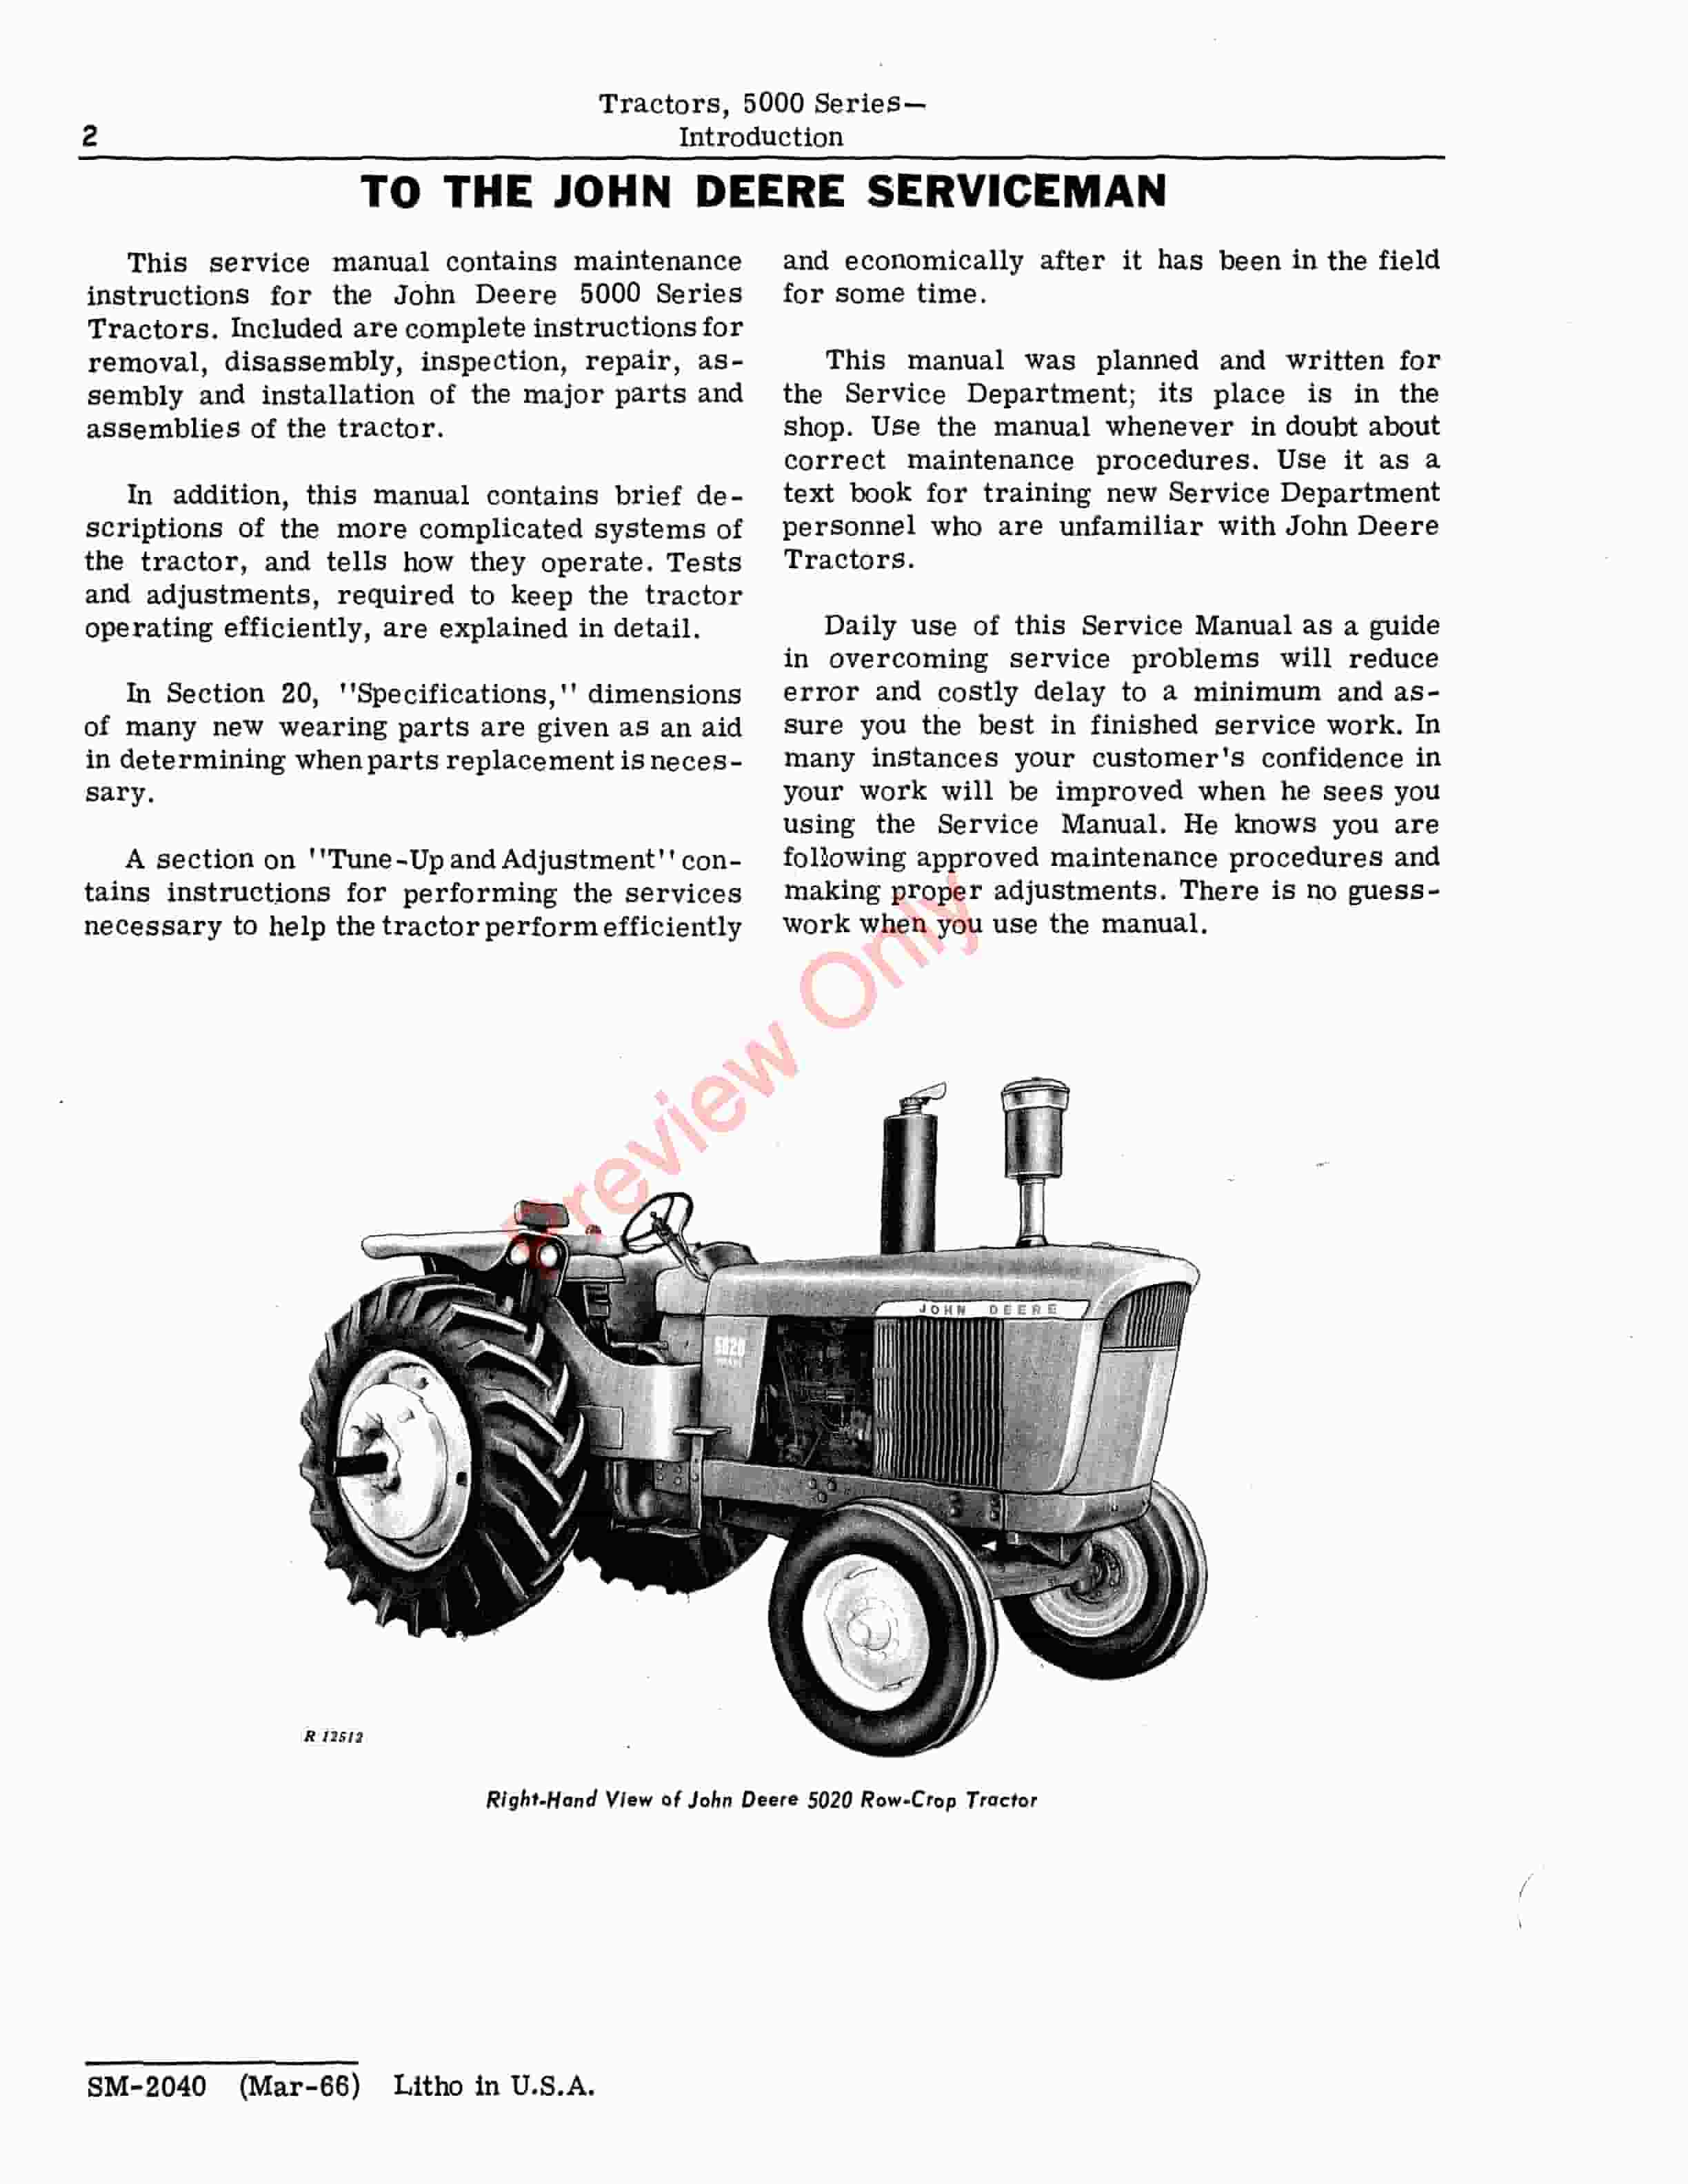 John Deere 5000 Series Tractors Service Manual SM2040 01MAR66 4